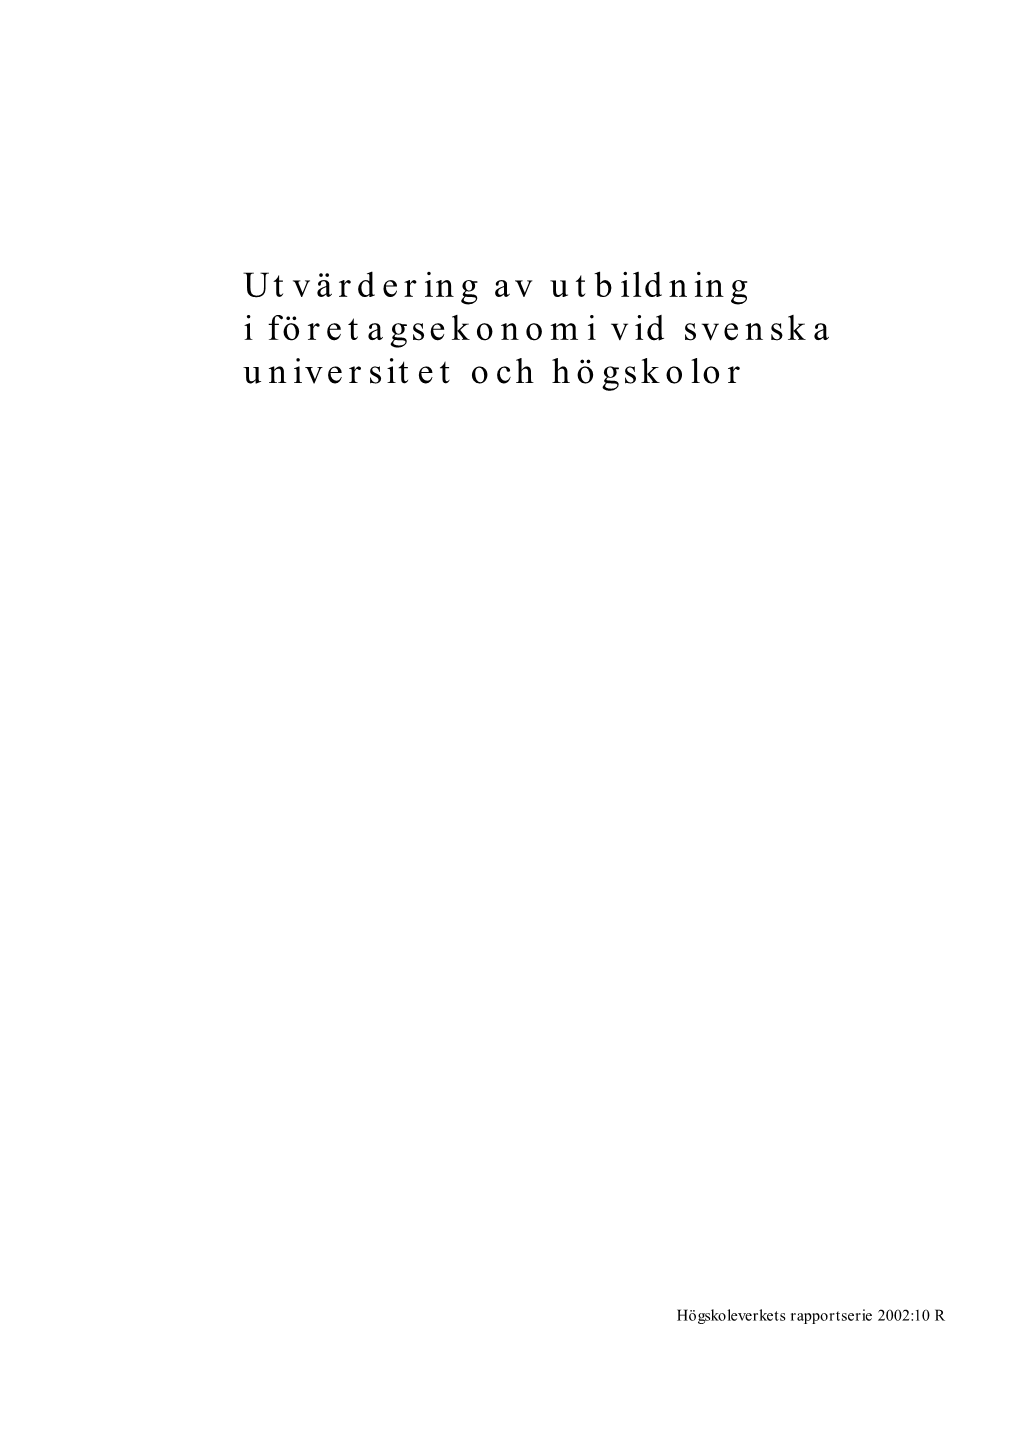 Utvärdering Av Utbildning I Företagsekonomi Vid Svenska Universitet Och Högskolor